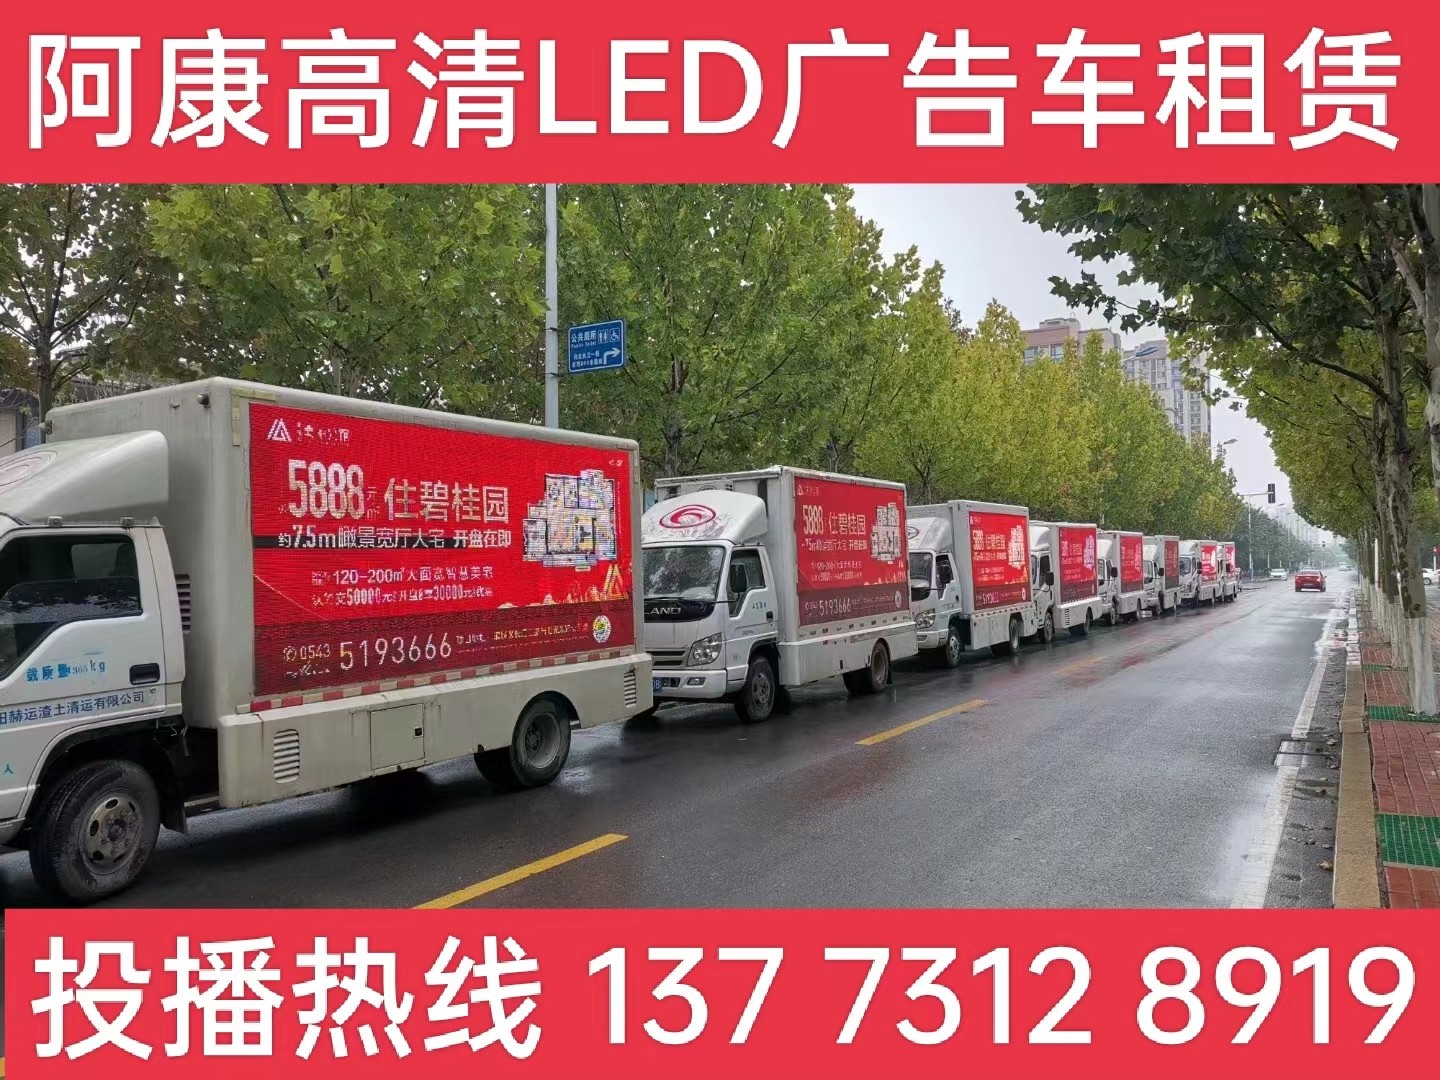 宁国宣传车租赁公司-楼盘LED广告车投放